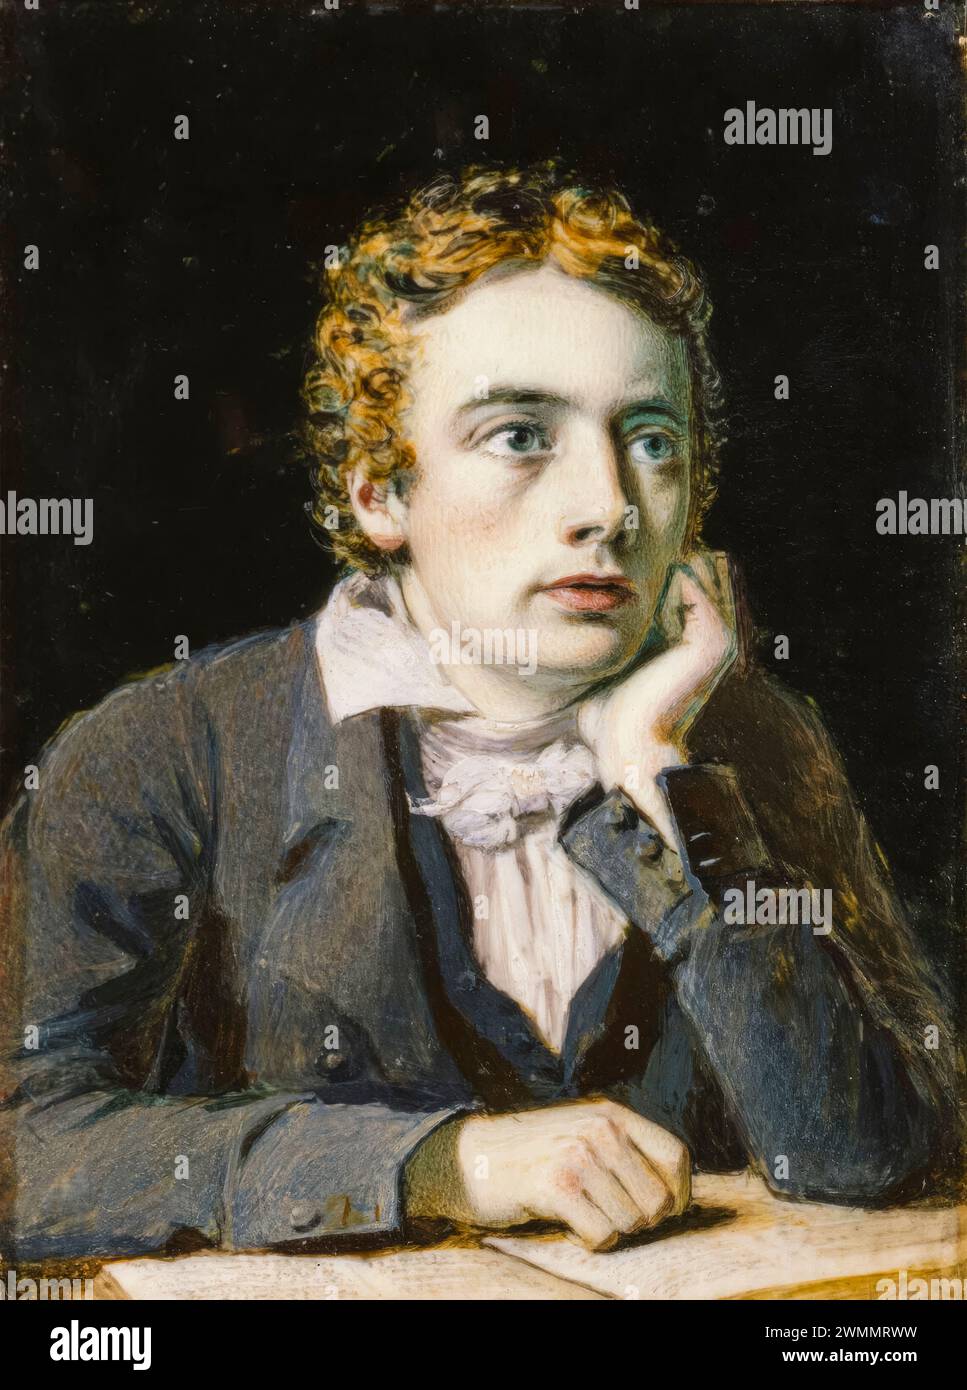 John Keats (1795-1821), poète romantique anglais, portrait miniature à l'huile sur ivoire par Joseph Severn, 1819 Banque D'Images